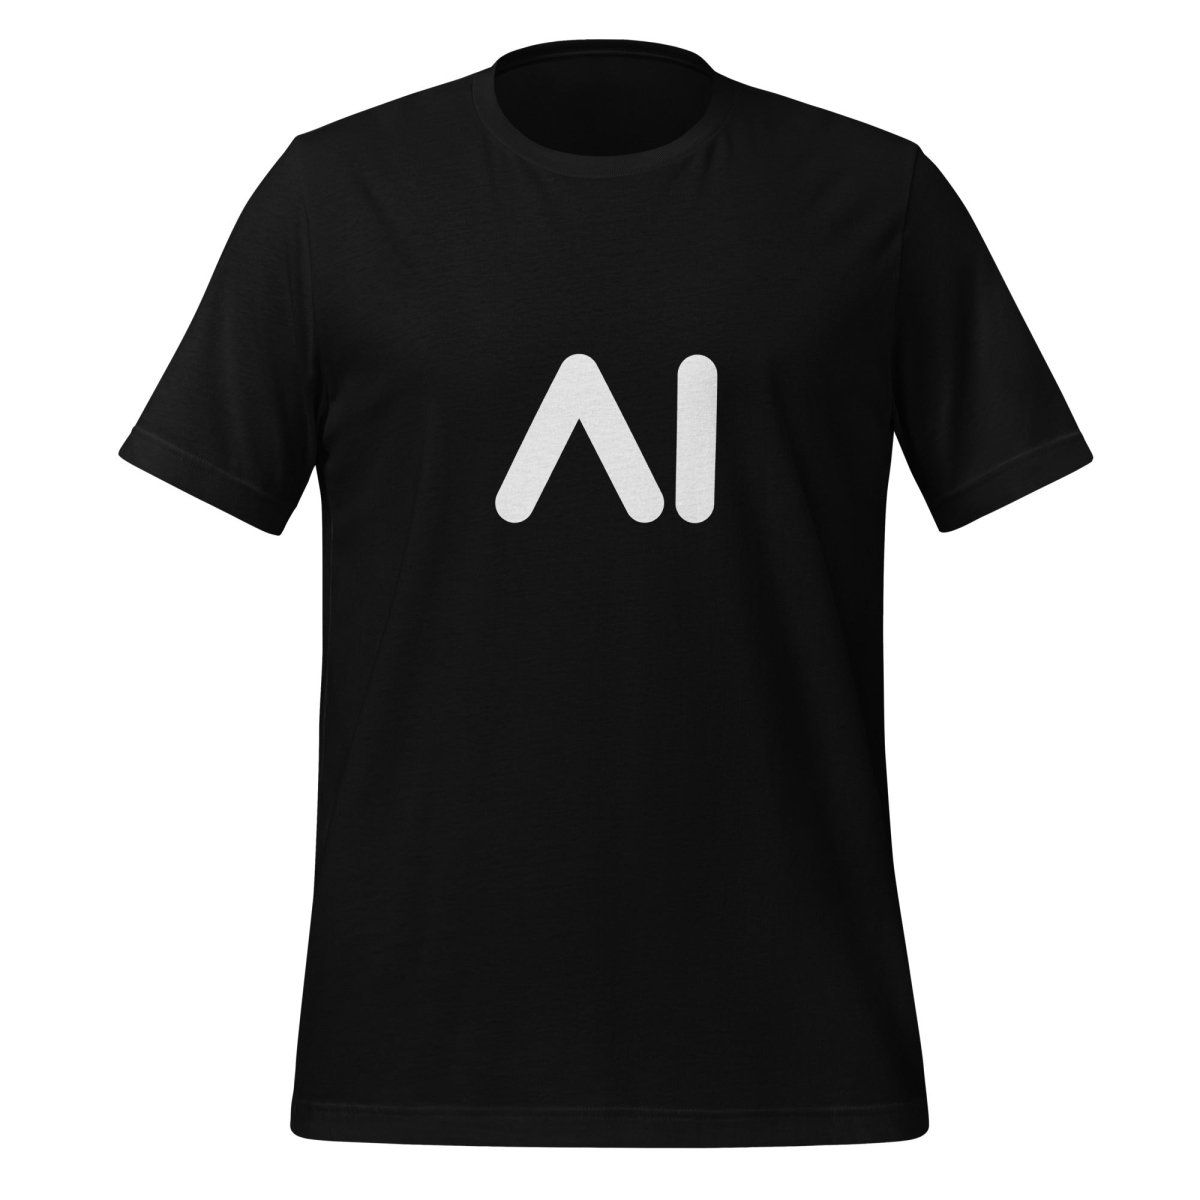 AI Logo T - Shirt 2 (unisex) - Black - AI Store